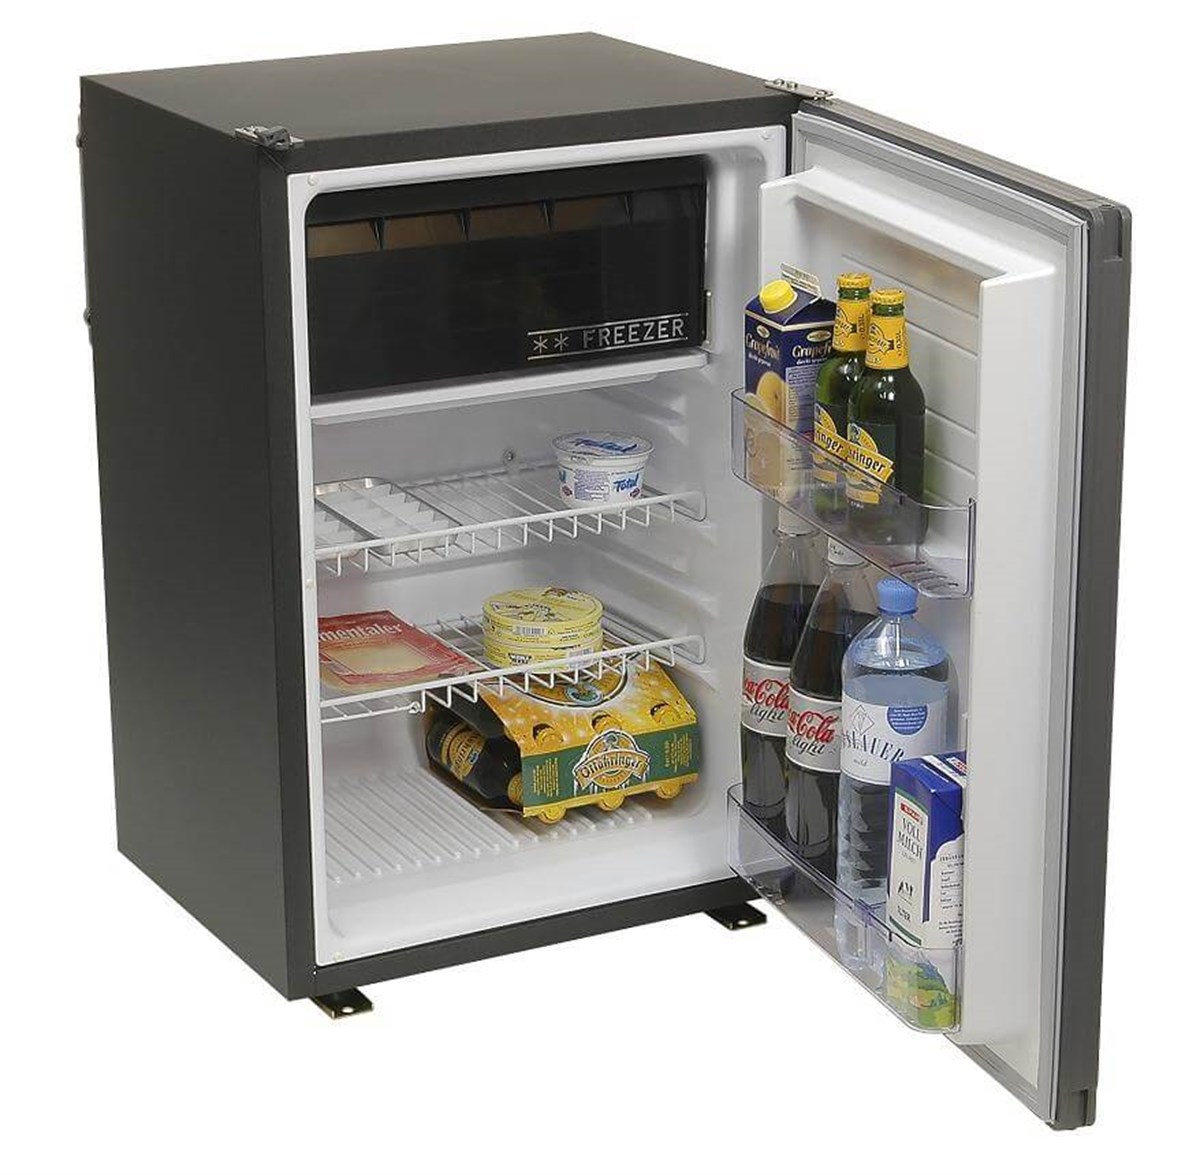 Холодильник 12v. Компрессорный холодильник Sawafuji Engel CK-85 [SR-90e]. Холодильник компрессорный 12 вольт. Engel Fridge Freezer Sawafuji автохолодильник. Холодильник 12 вольт компрессорный с морозилкой.